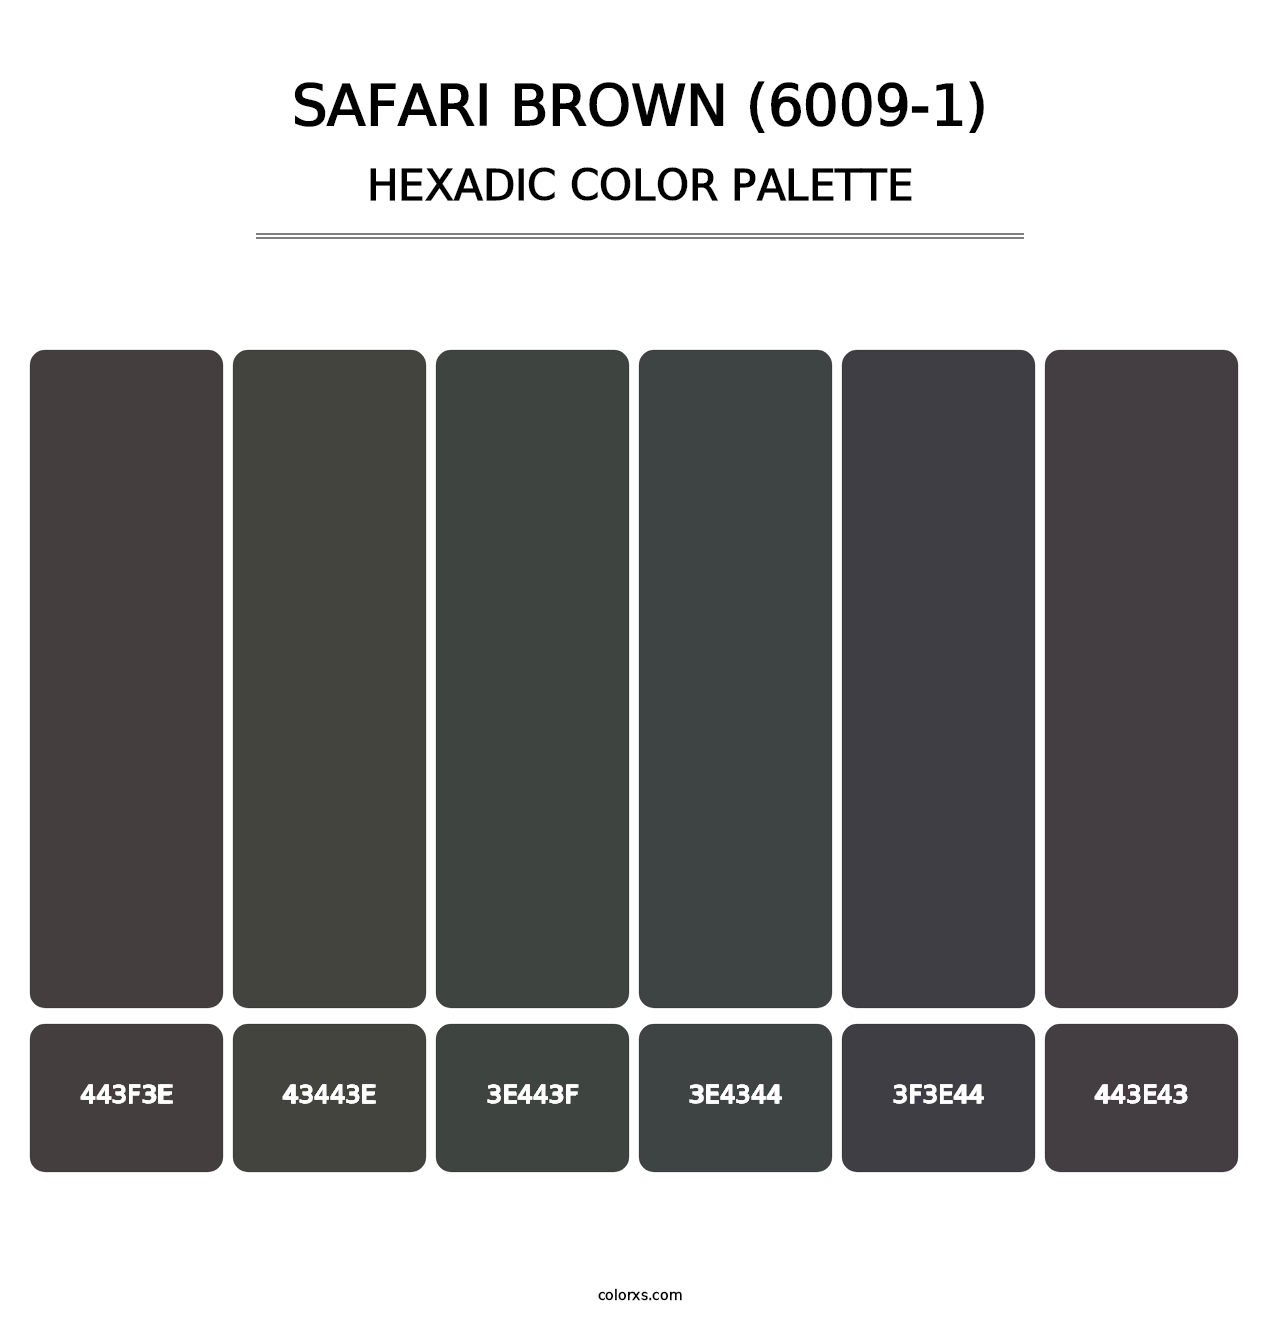 Safari Brown (6009-1) - Hexadic Color Palette